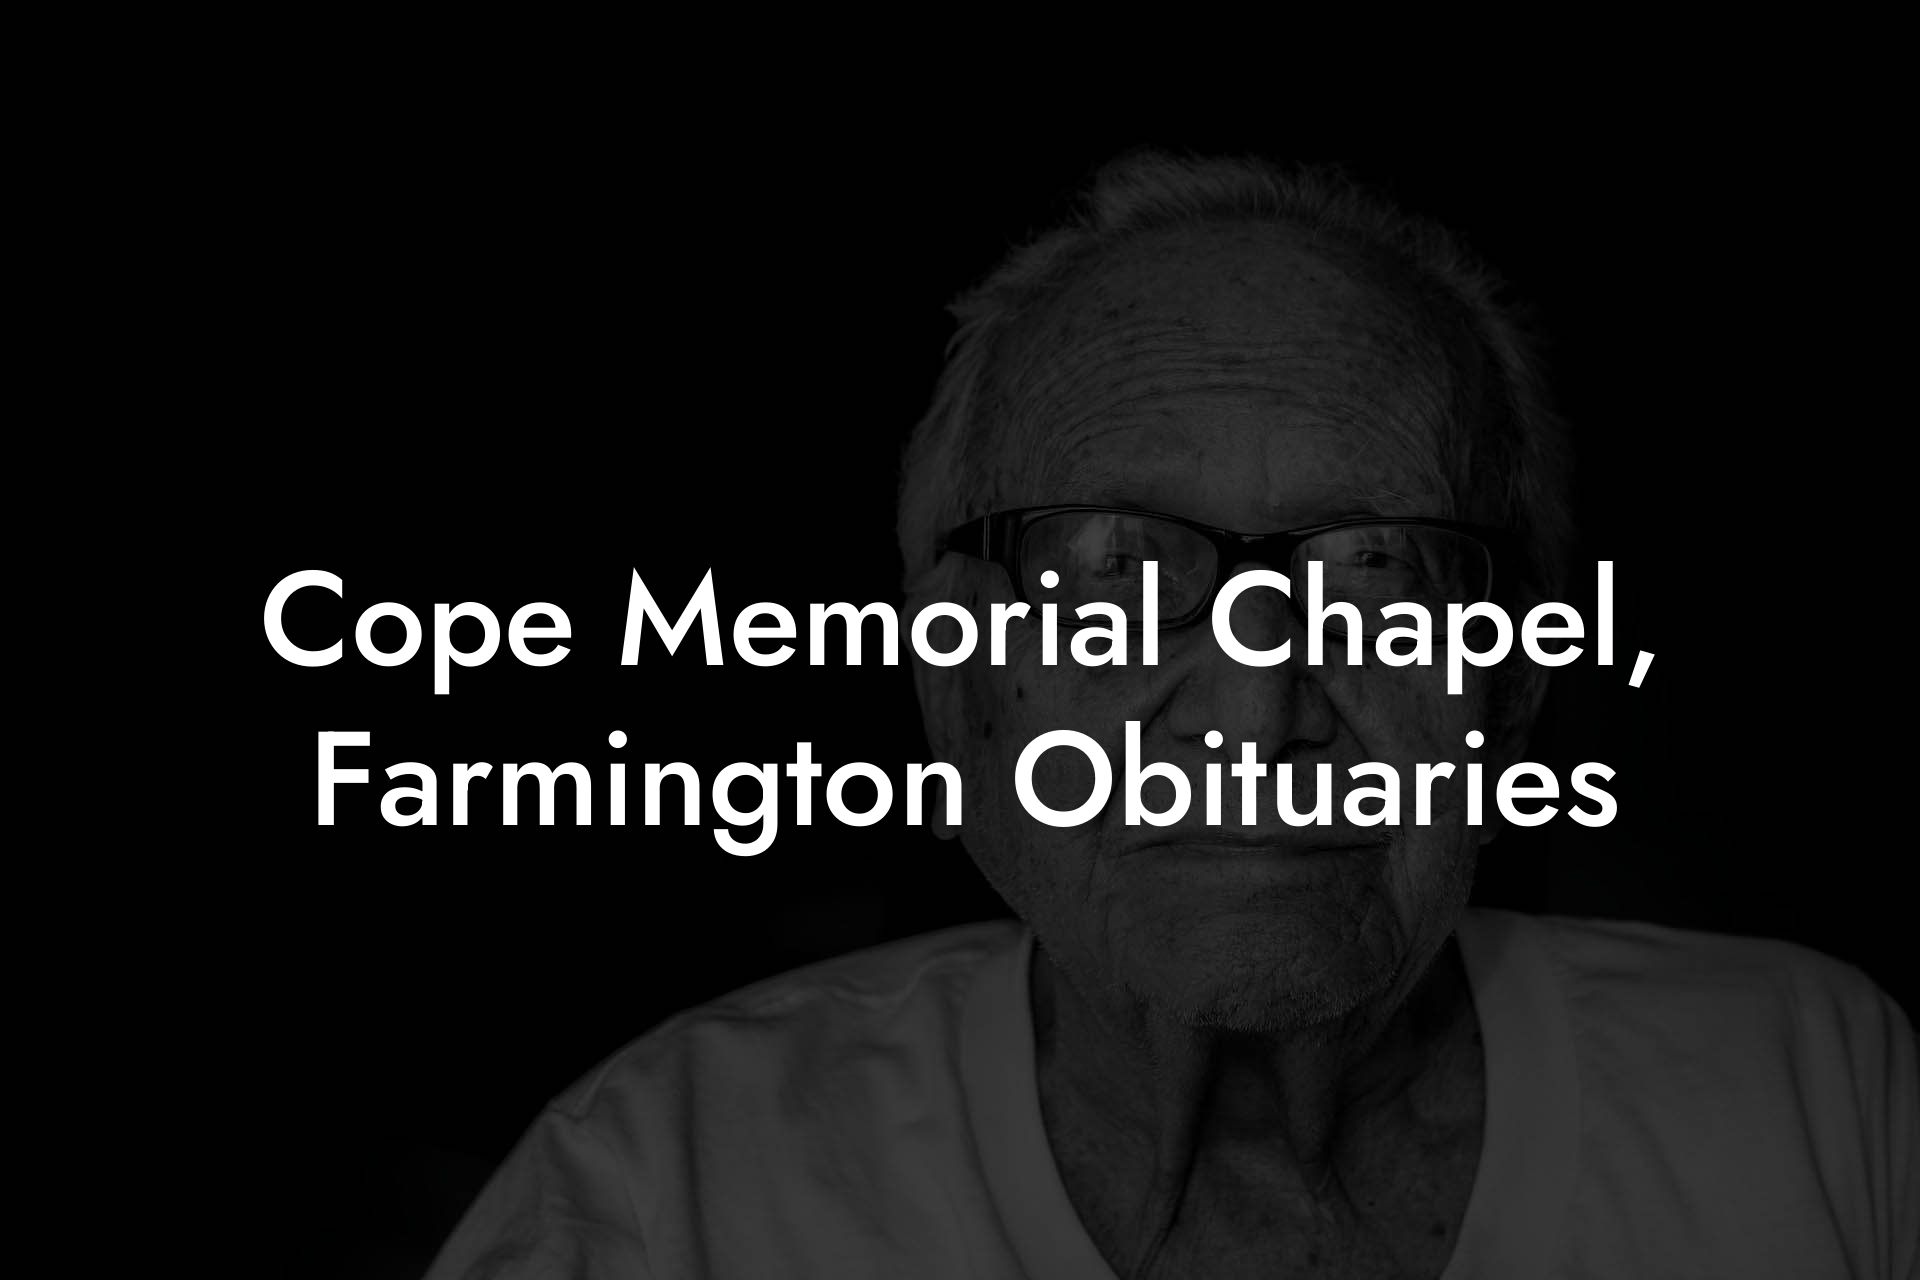 Cope Memorial Chapel, Farmington Obituaries